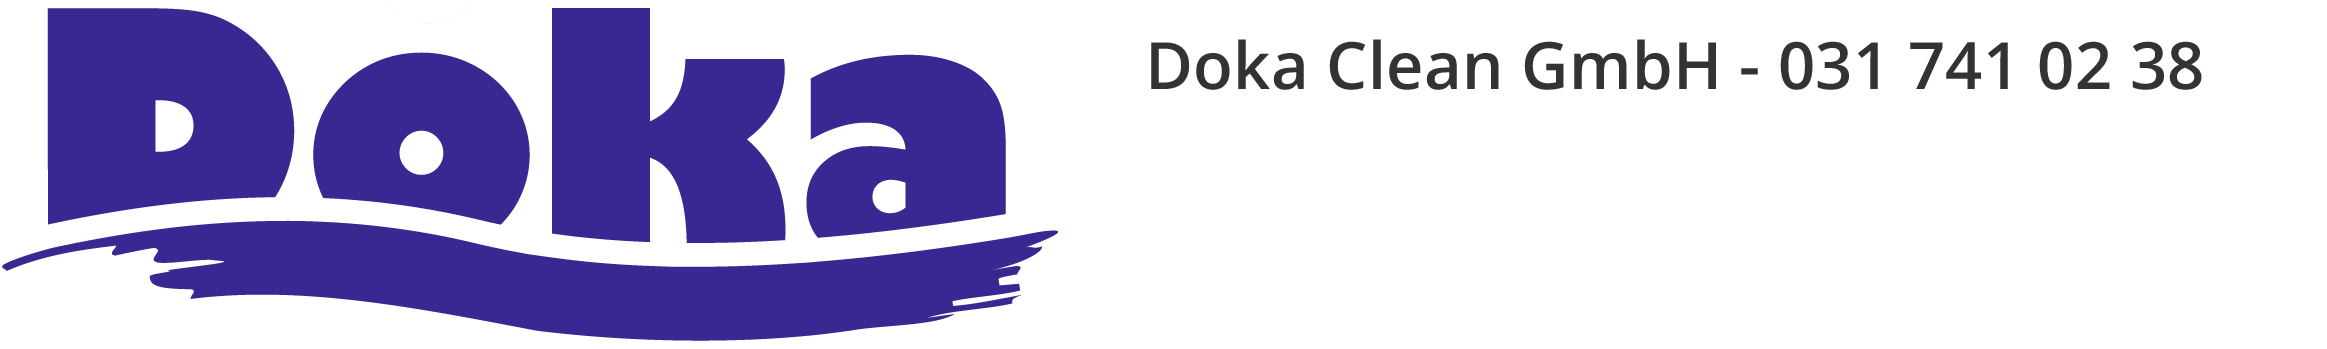 Doka Gmbh - Ihr Reinigungsunternehmen in der Region